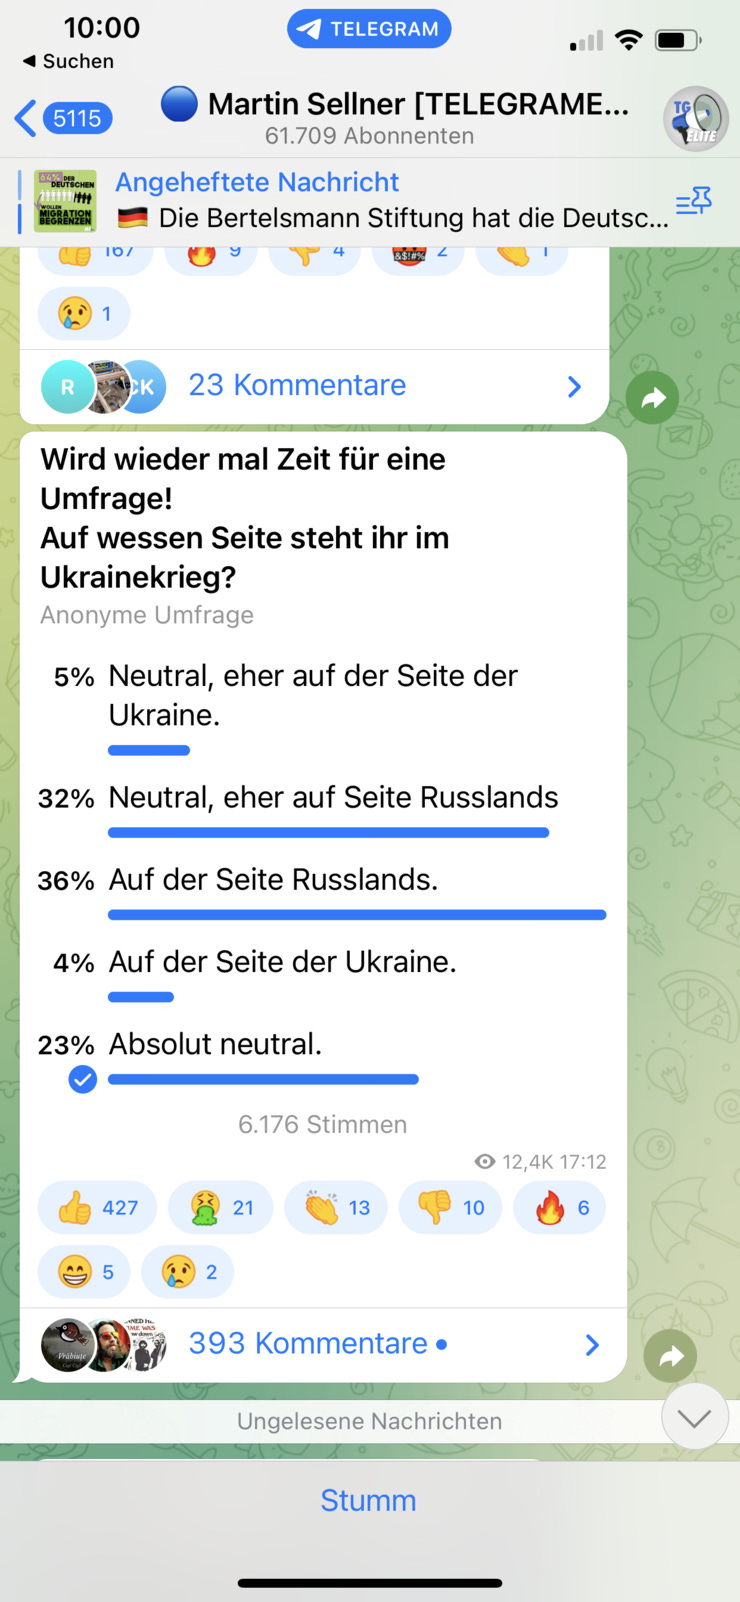 Umfrage auf der Telegramseite von Martin Sellner: Auf wessen Seite steht ihr im Ukrainekrieg?